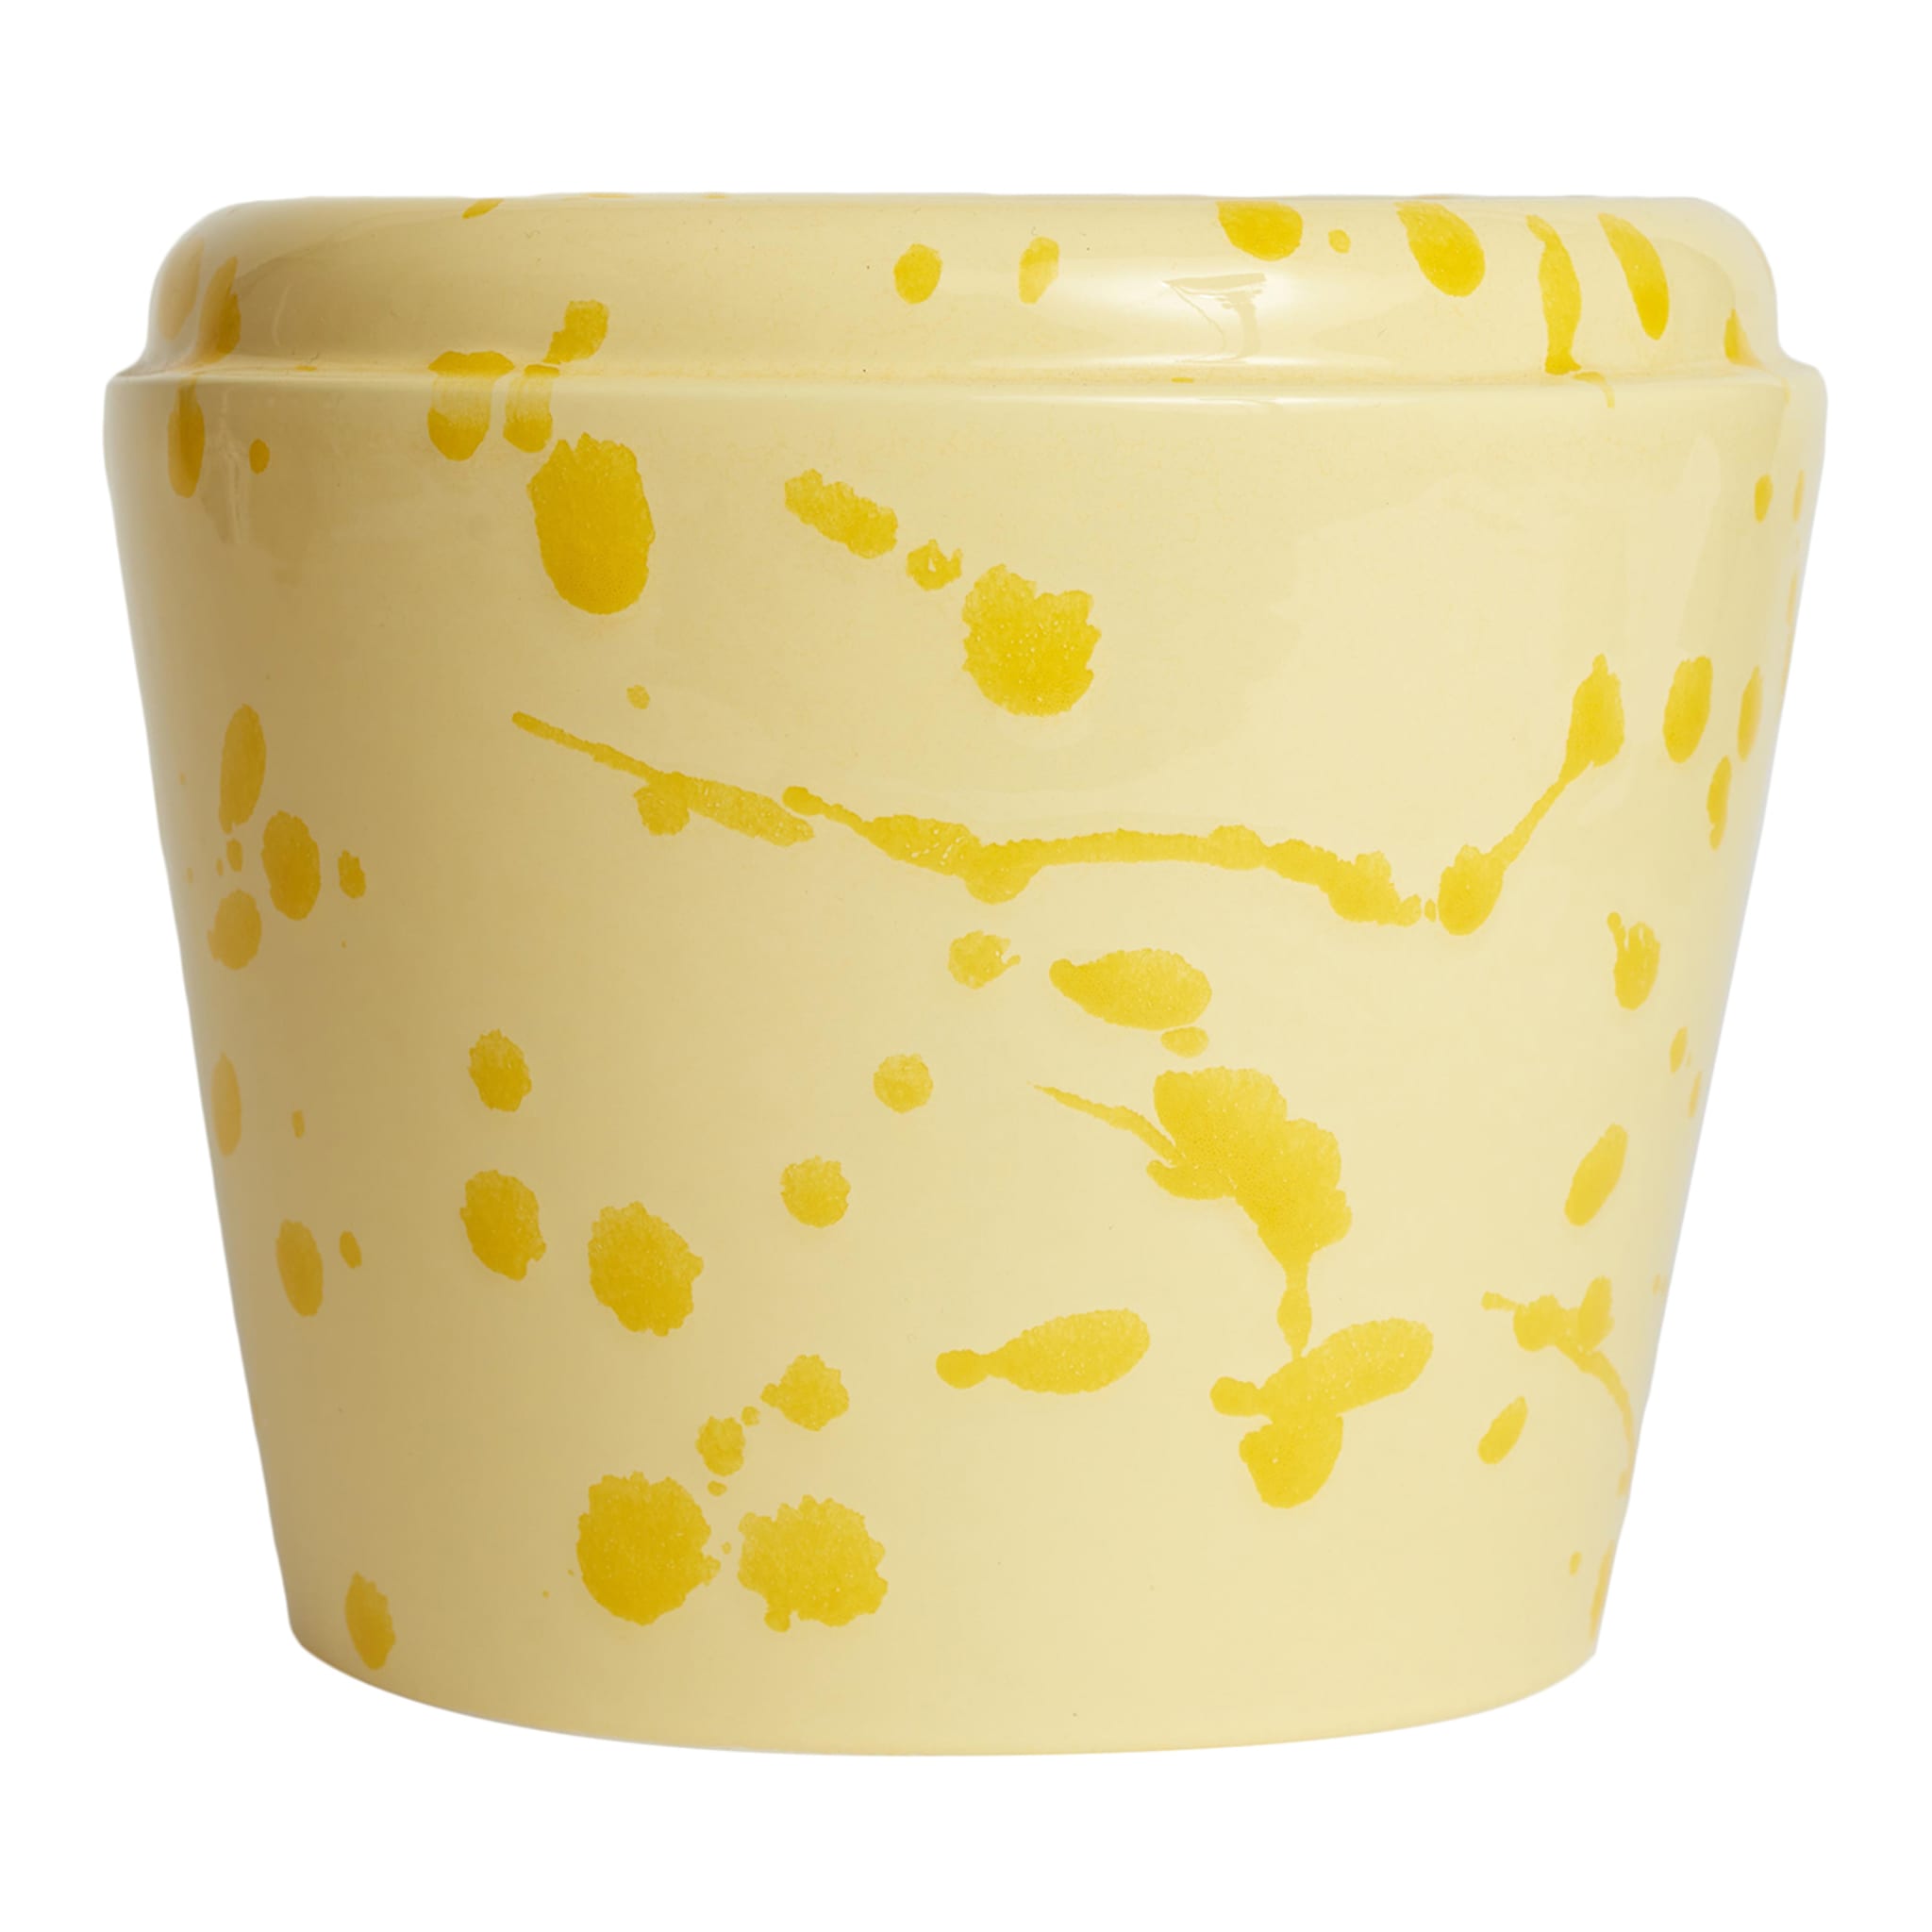 Cream and Yellow Ceramic Cachepot Vase - Main view